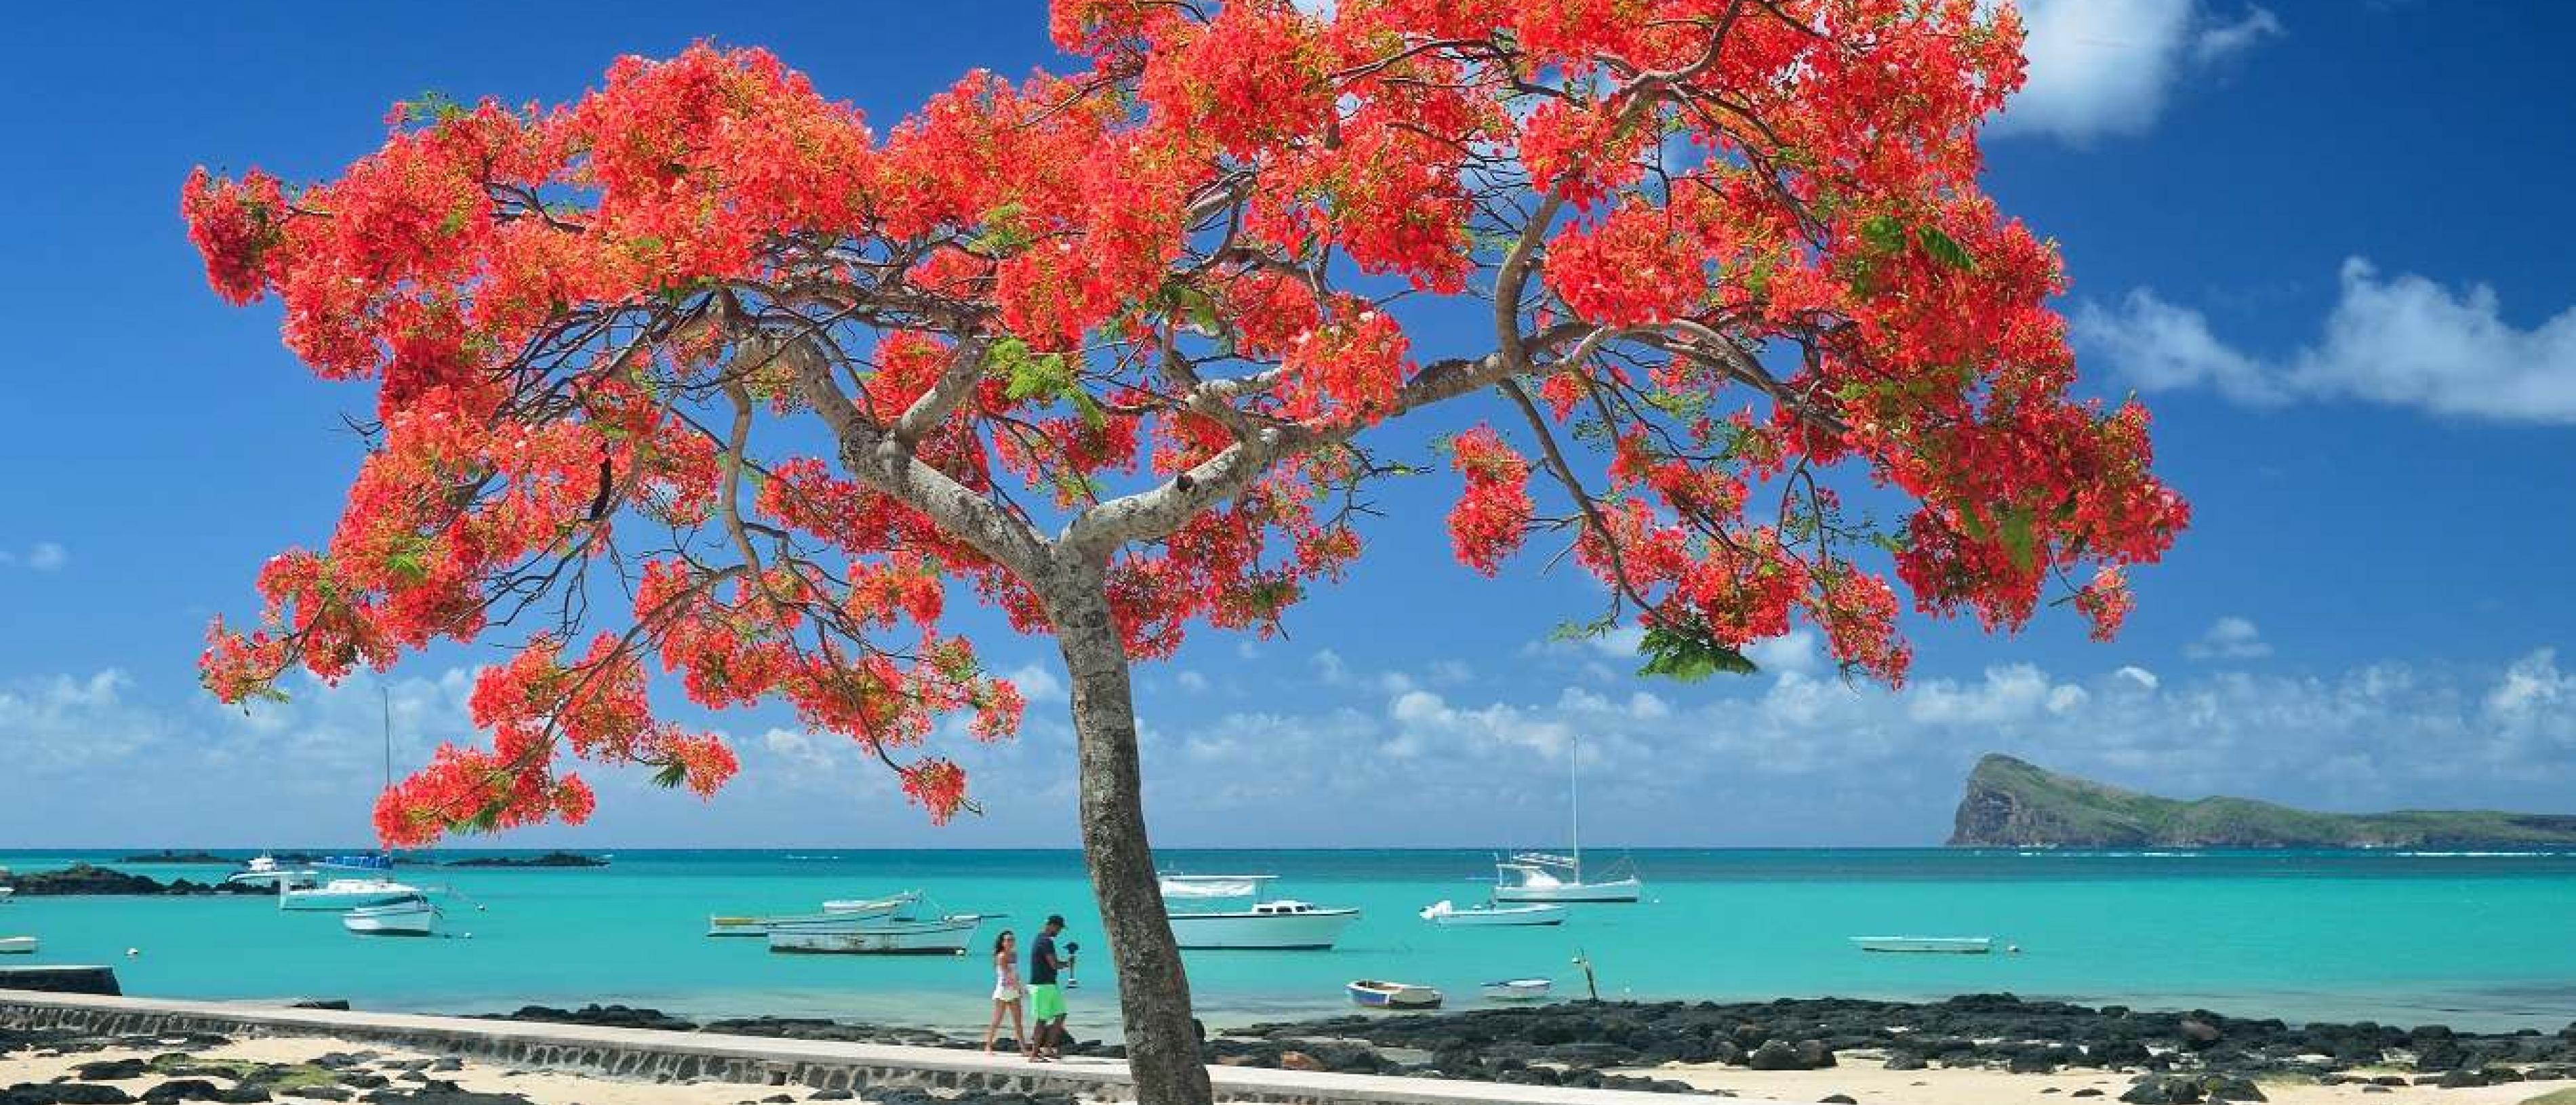 Visit the island of Mauritius Mauritius tourism website